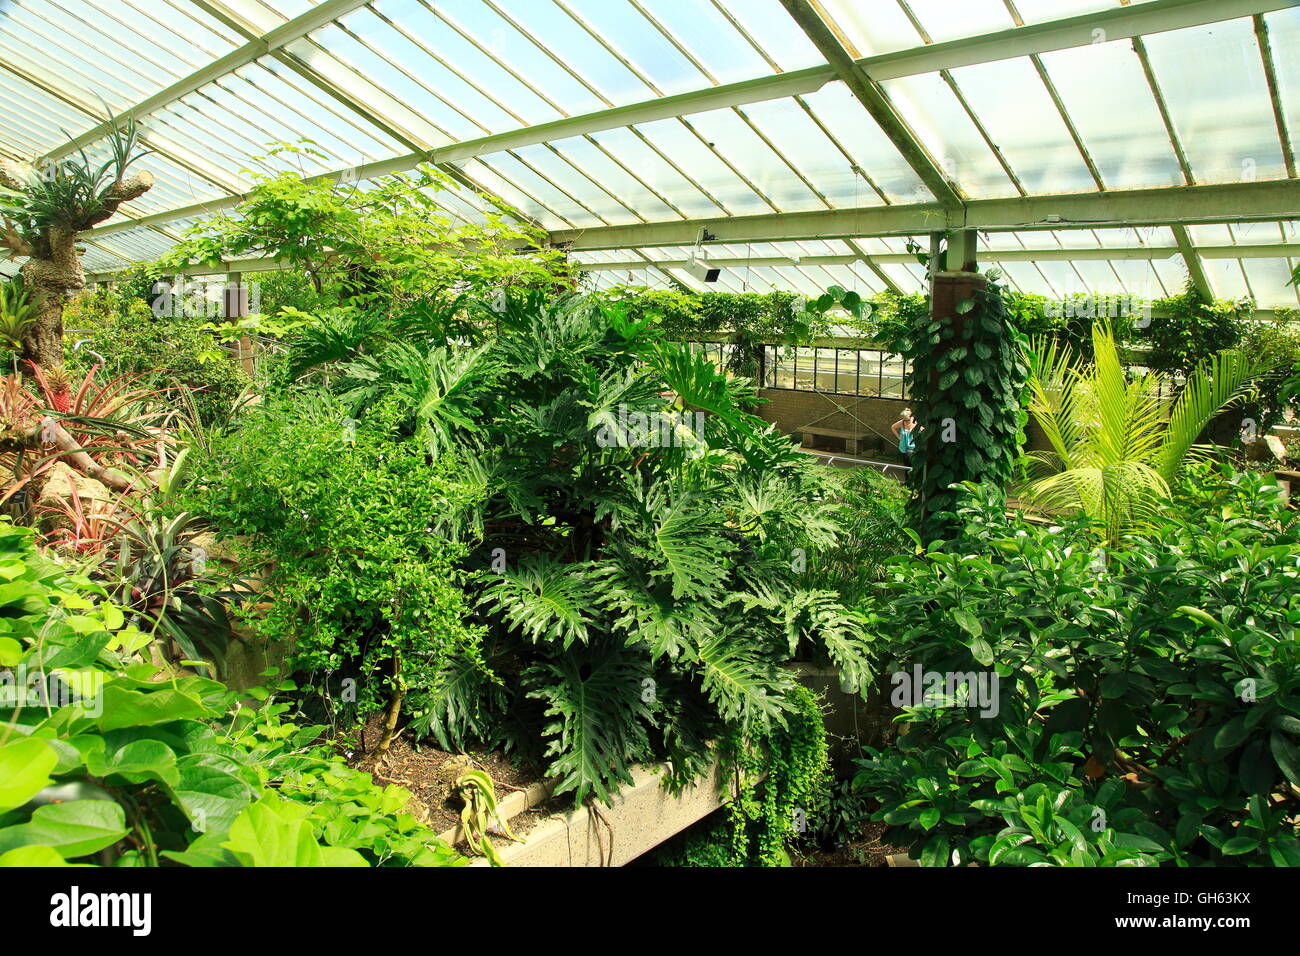 Environnement de forêt tropicale à l'intérieur de l'hôtel Princess of Wales conservatory, Royal Botanic Gardens, Kew, Londres, Angleterre, Royaume-Uni Banque D'Images